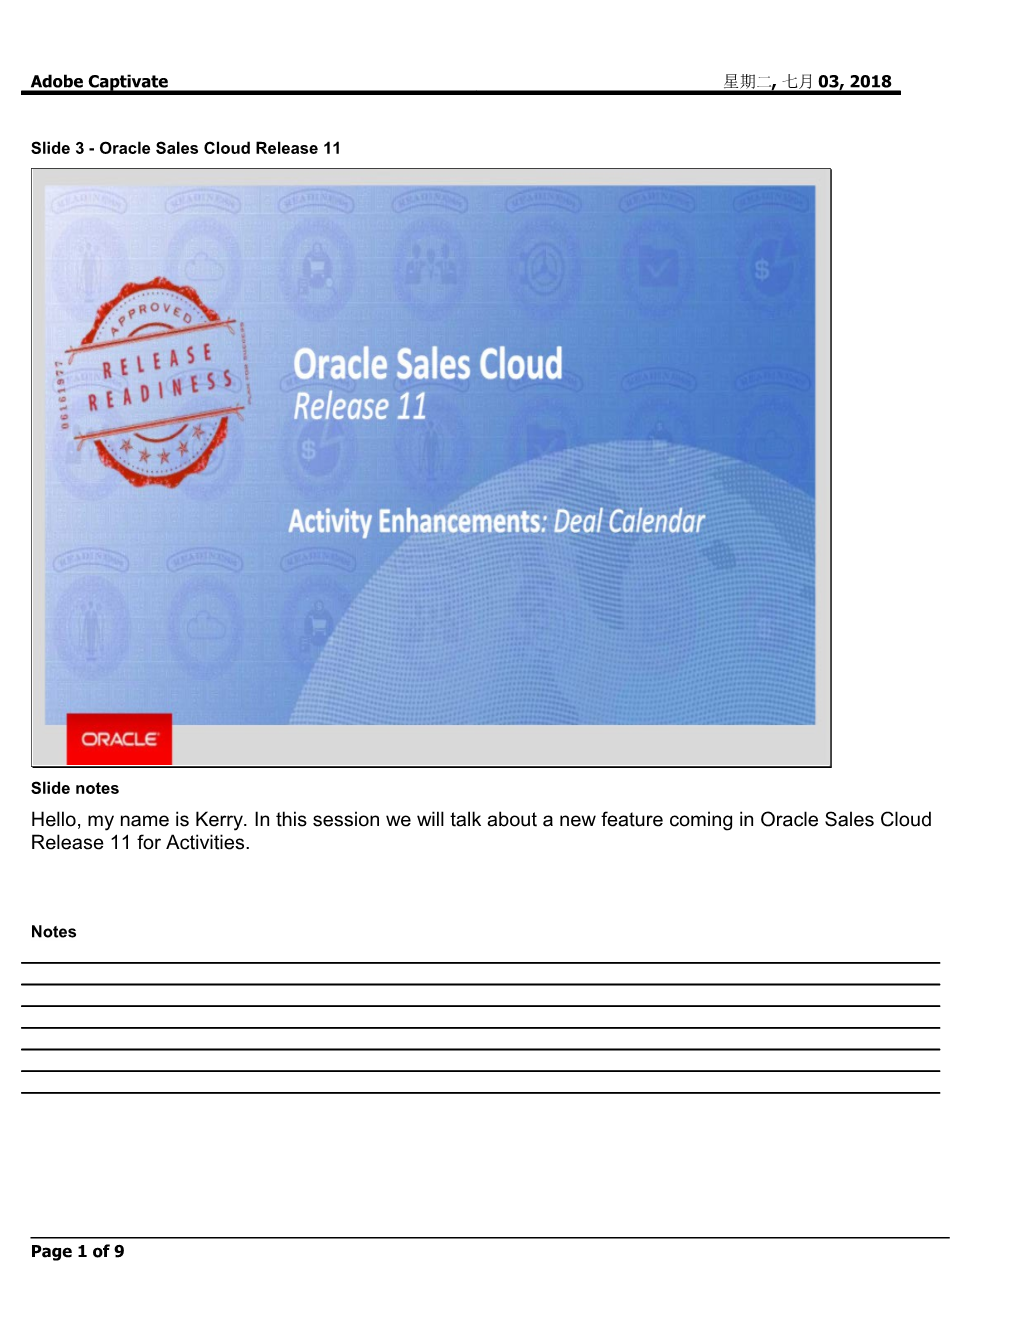 Slide 3 - Oracle Sales Cloud Release 11